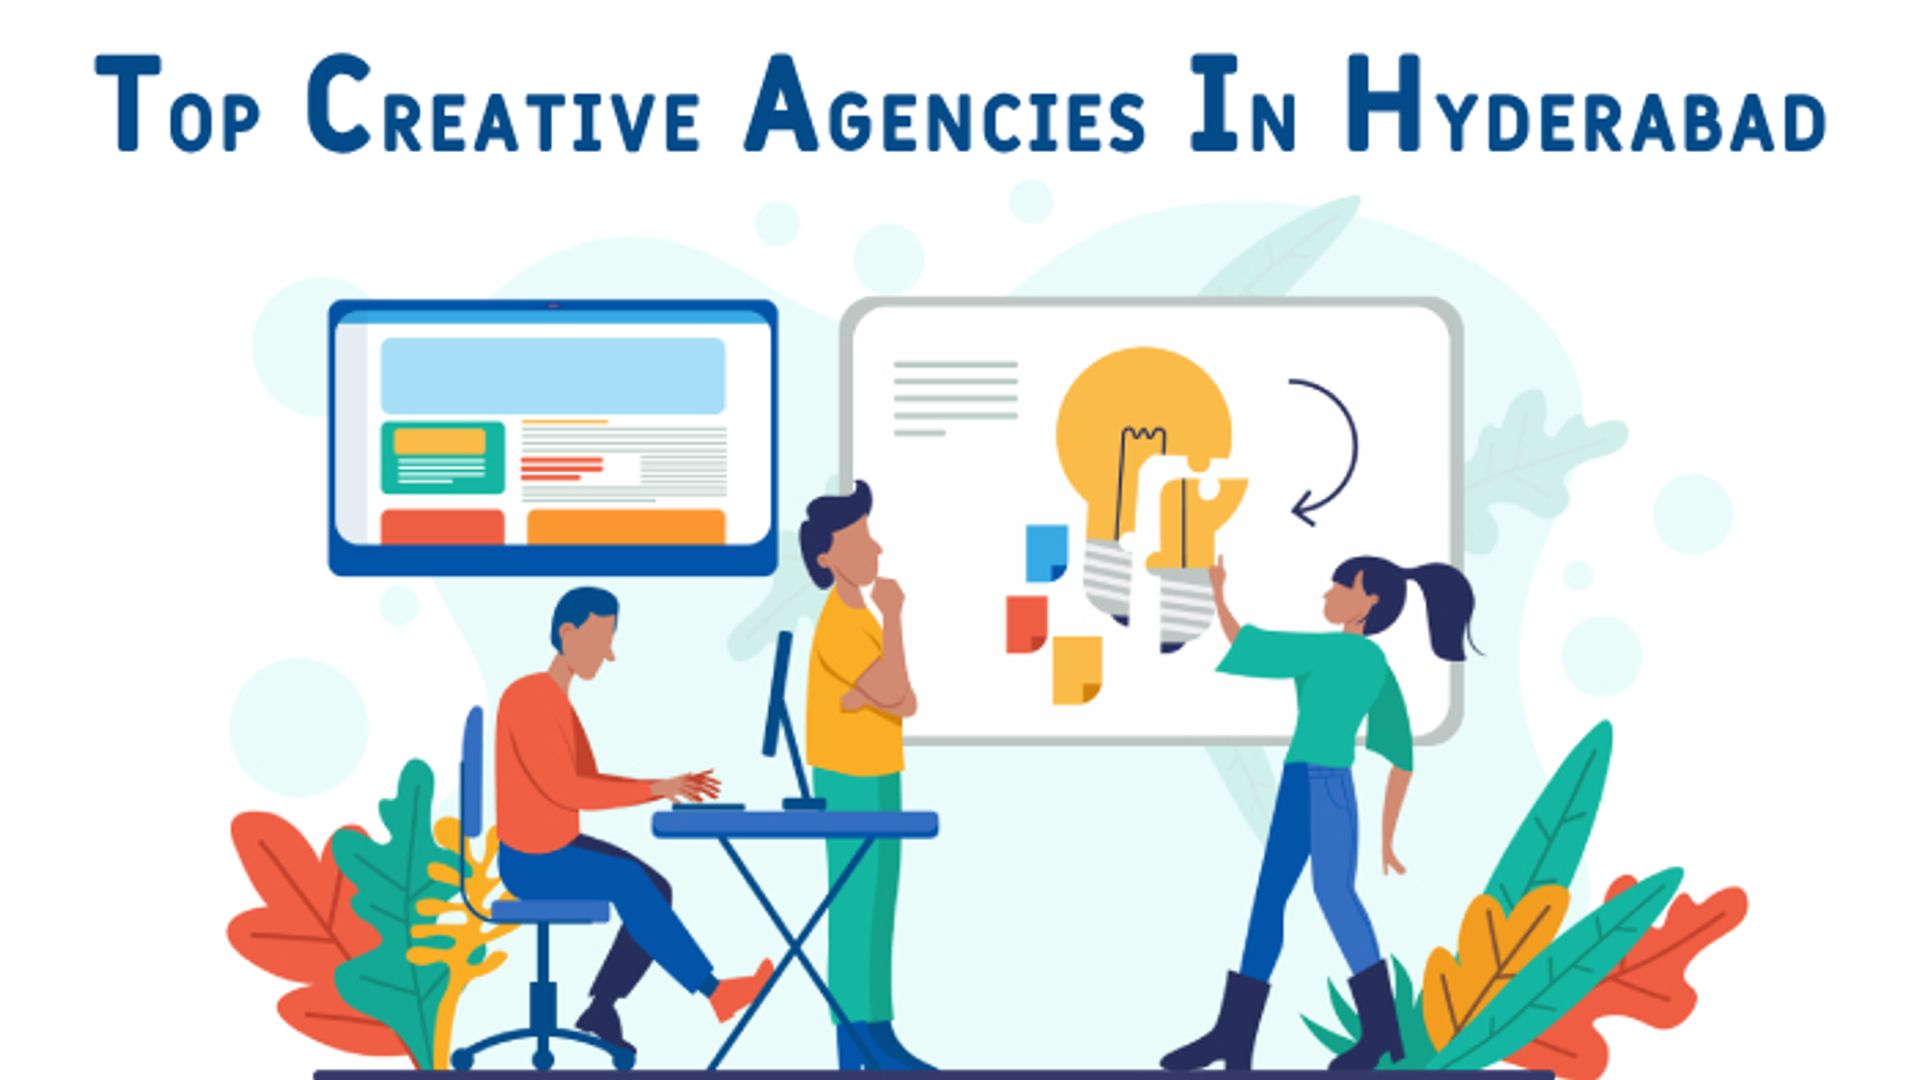 Top Creative Agencies In Hyderabad